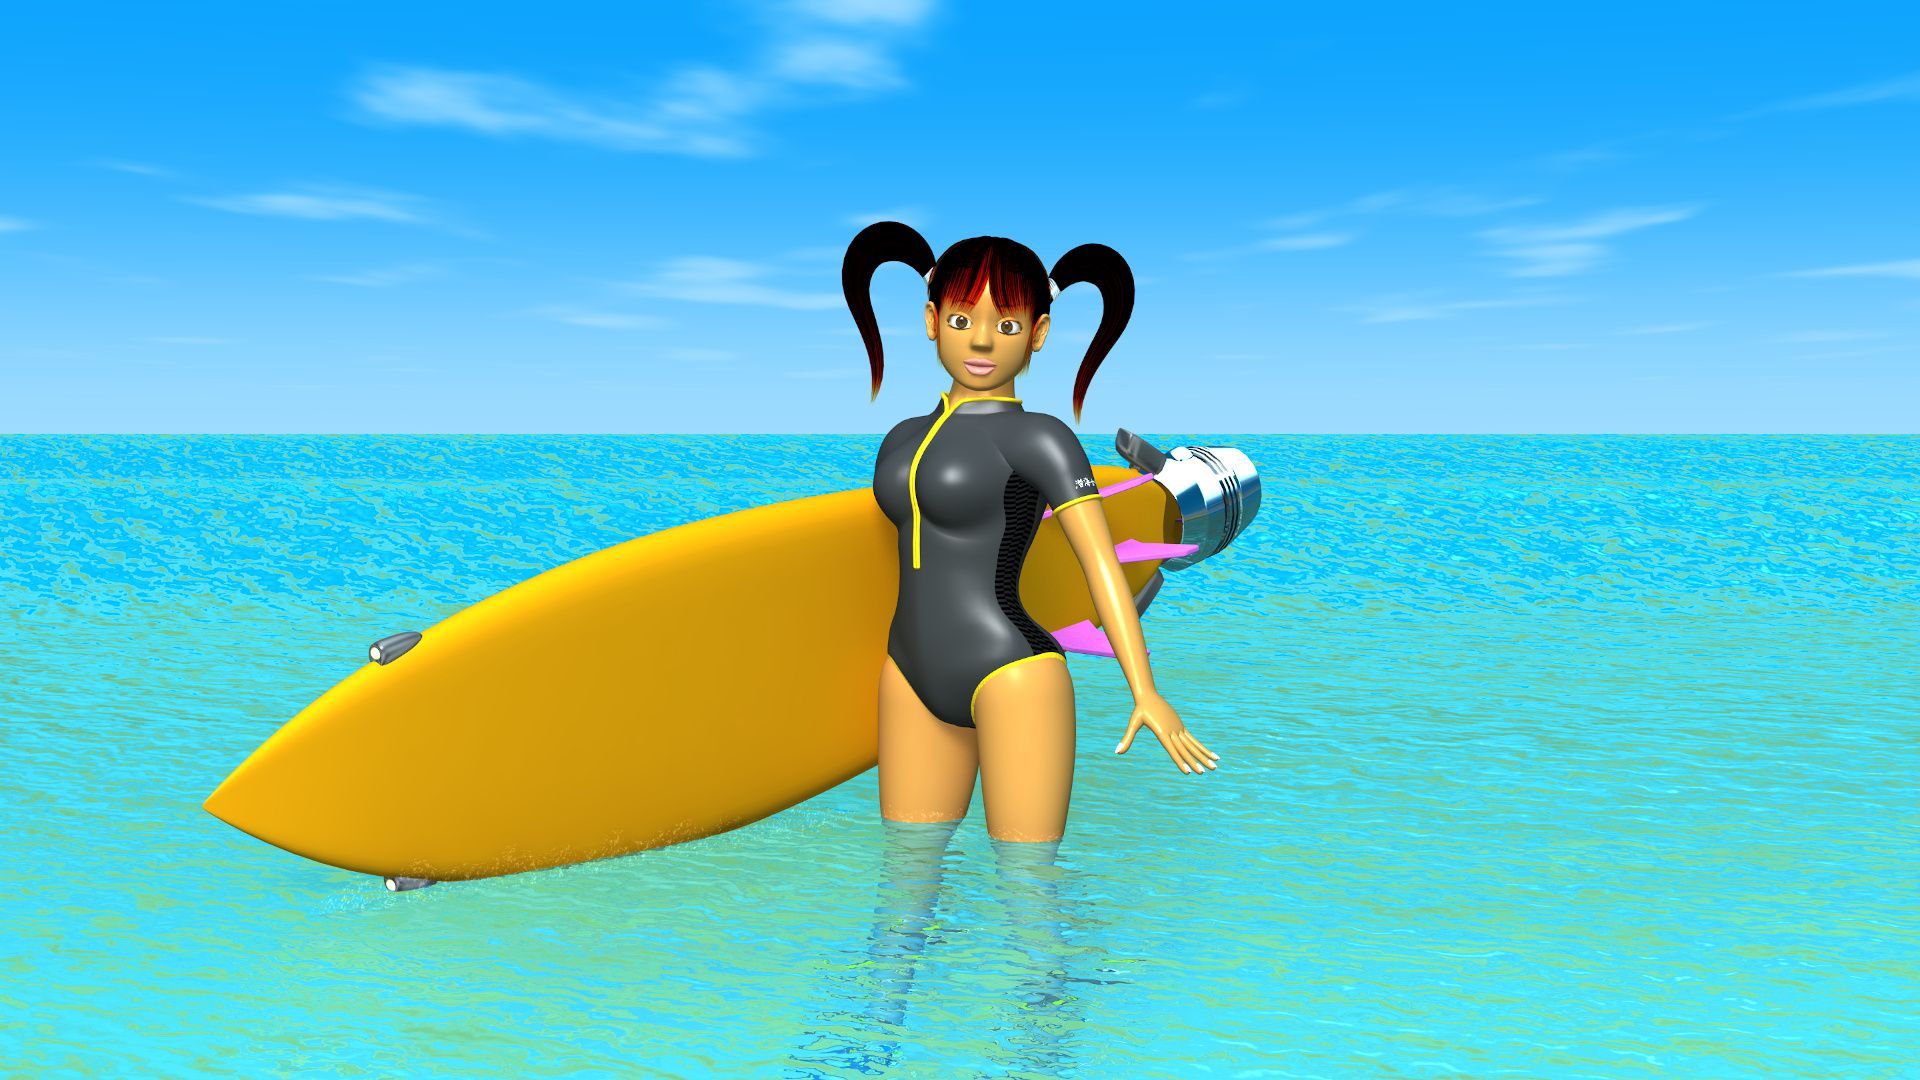 3DCG壁紙 海とサーフボードと3DキャラクターのOL-4